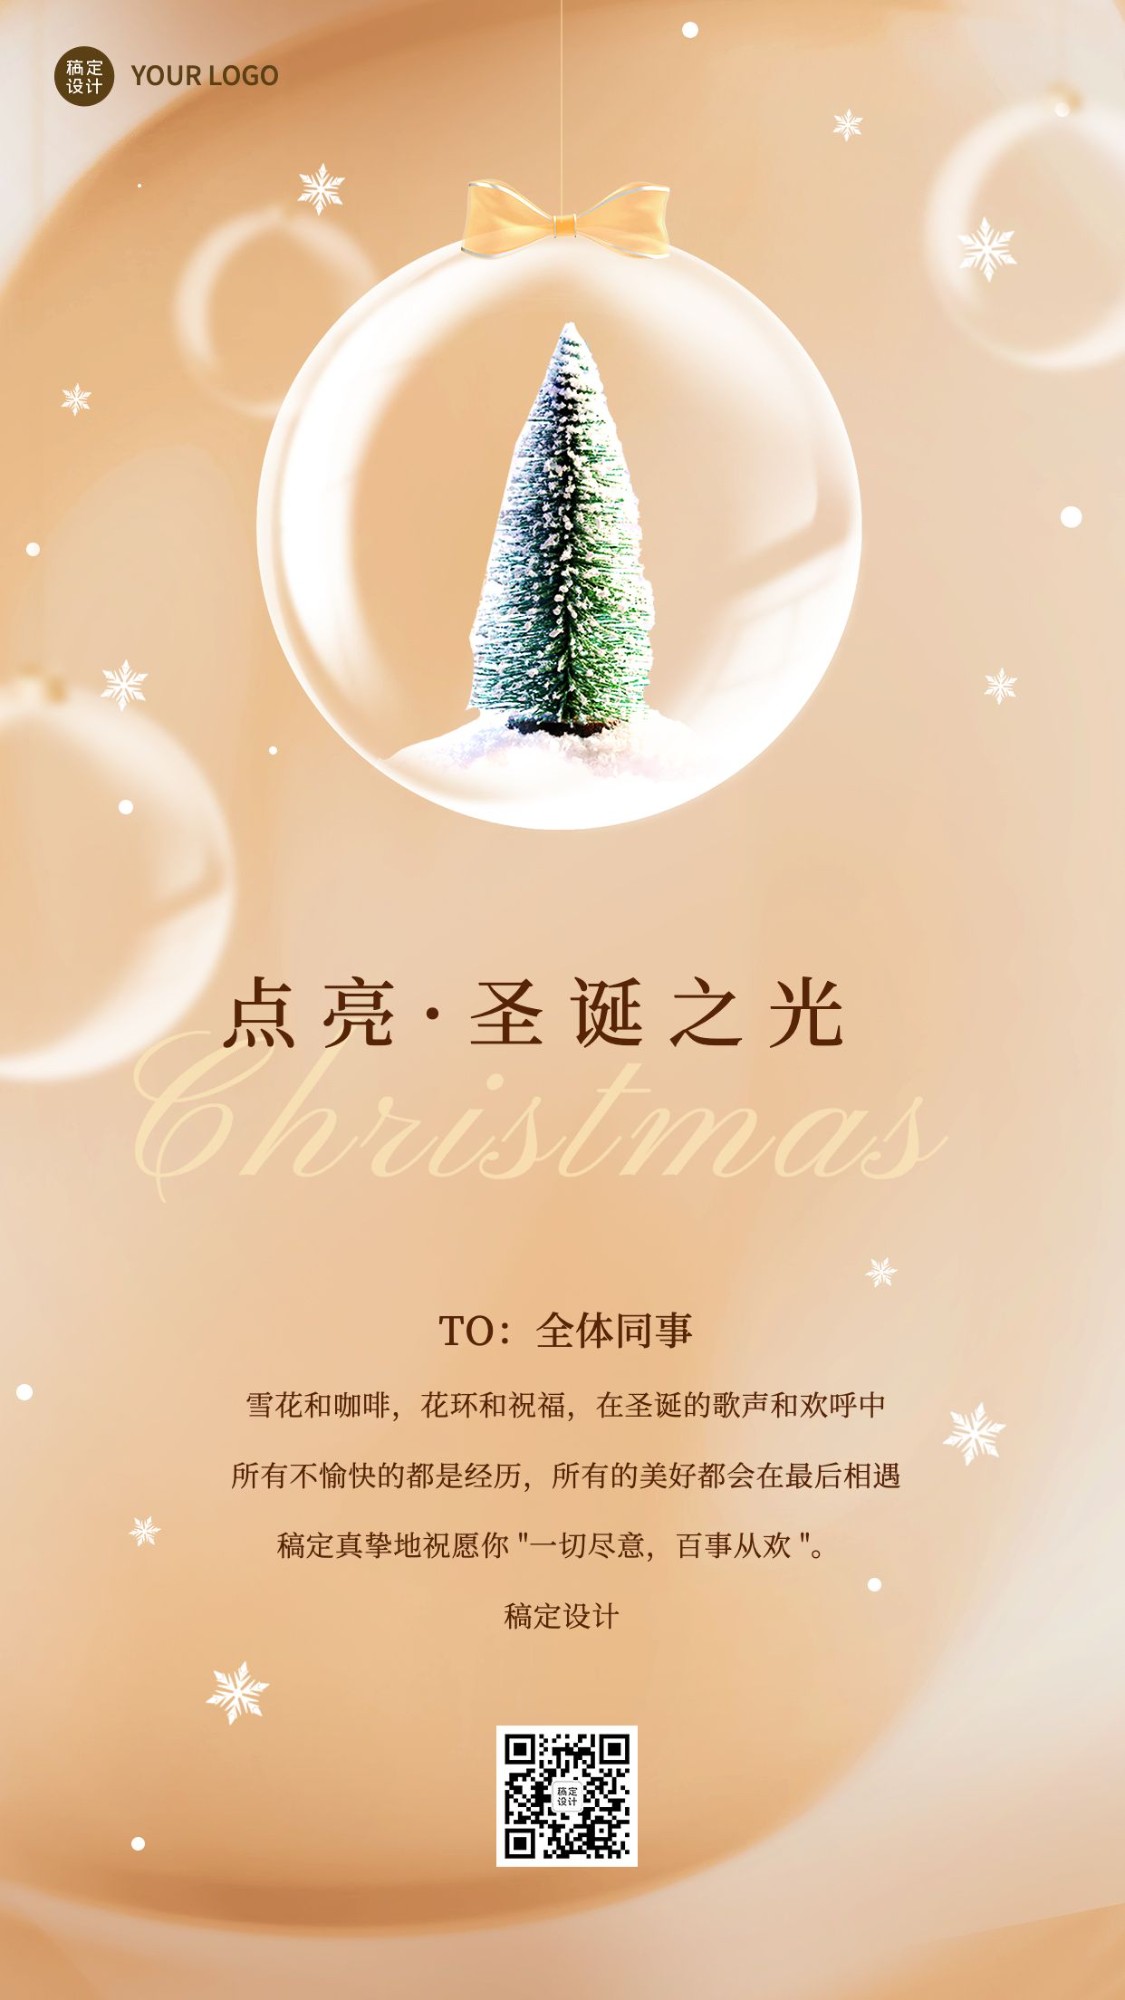 圣诞节企业祝福贺卡手机海报预览效果